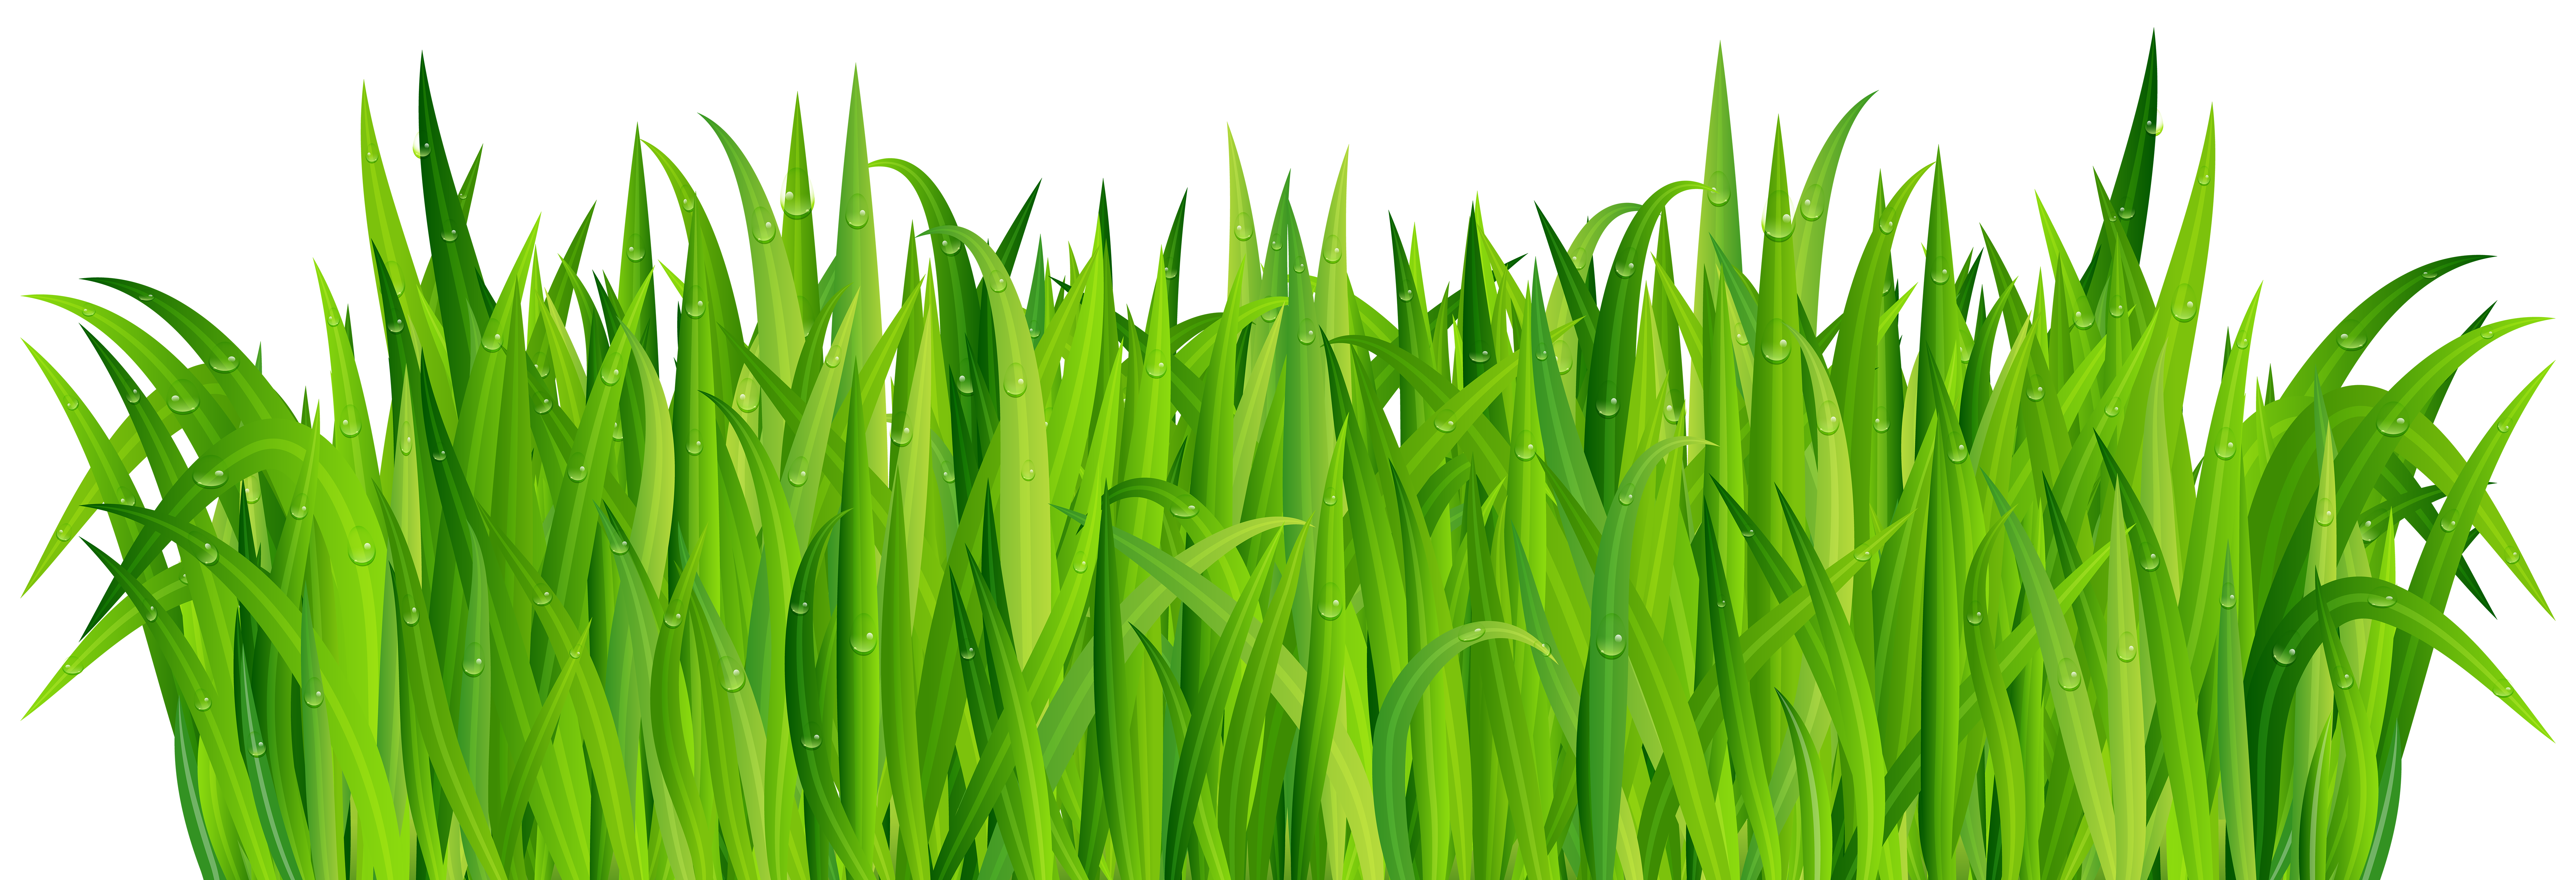 grass clipart piece